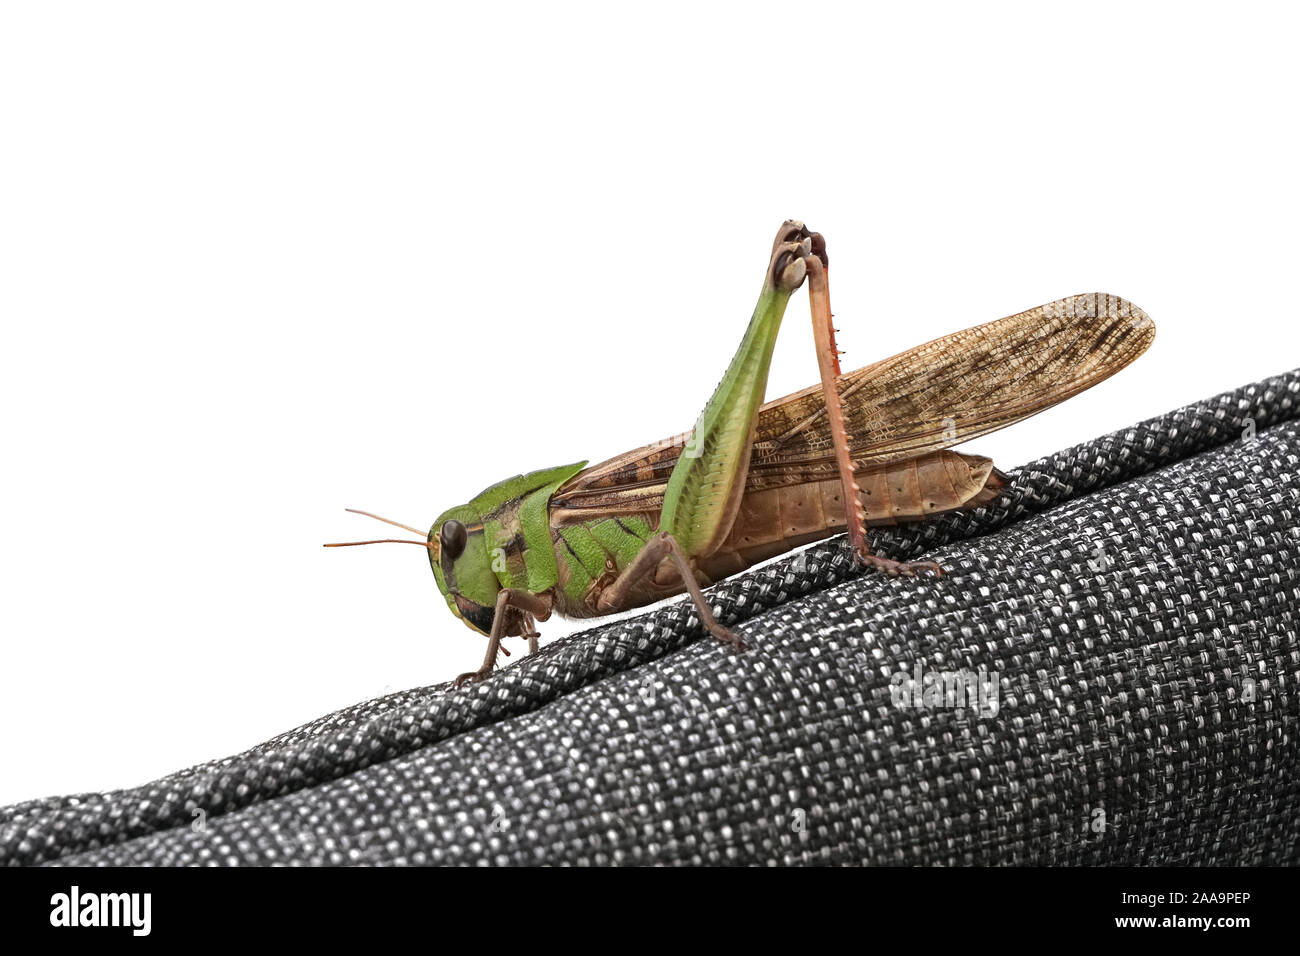 Eine große Grüne Heuschrecke Insekt saß auf dem Arm von einem Stuhl  Stockfotografie - Alamy